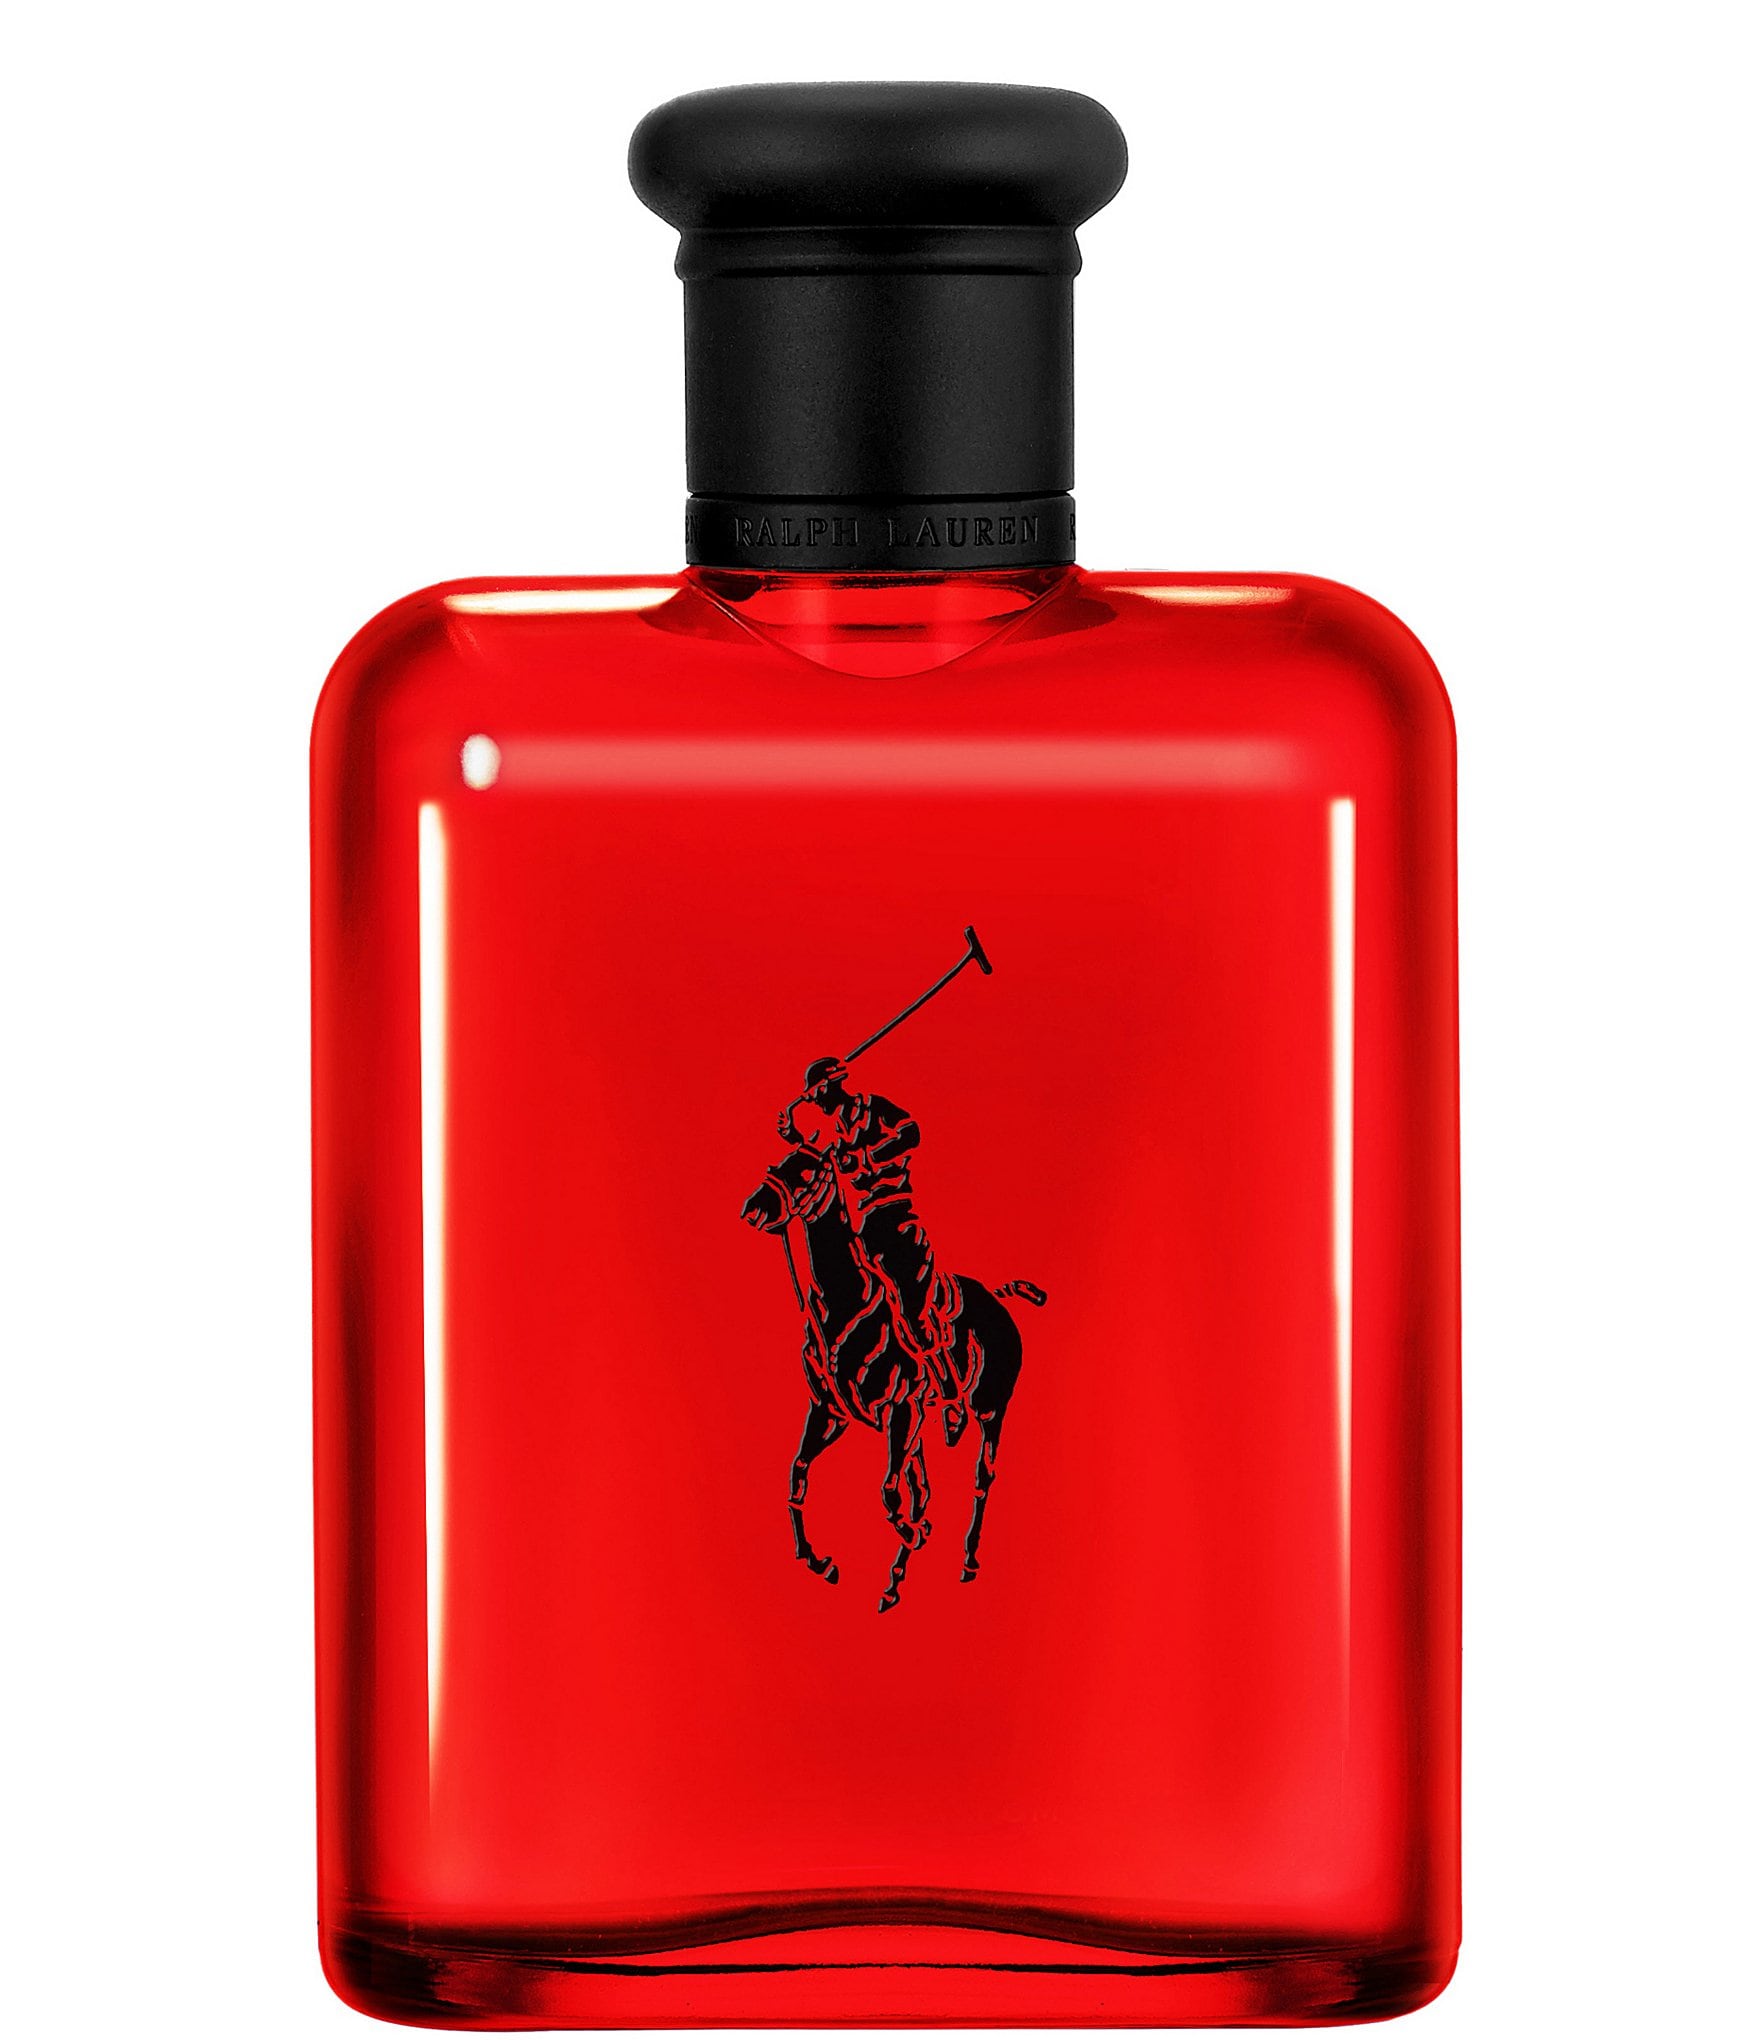 Ralph Lauren Men's Polo Red Eau de Toilette Spray - 6.7 fl oz bottle